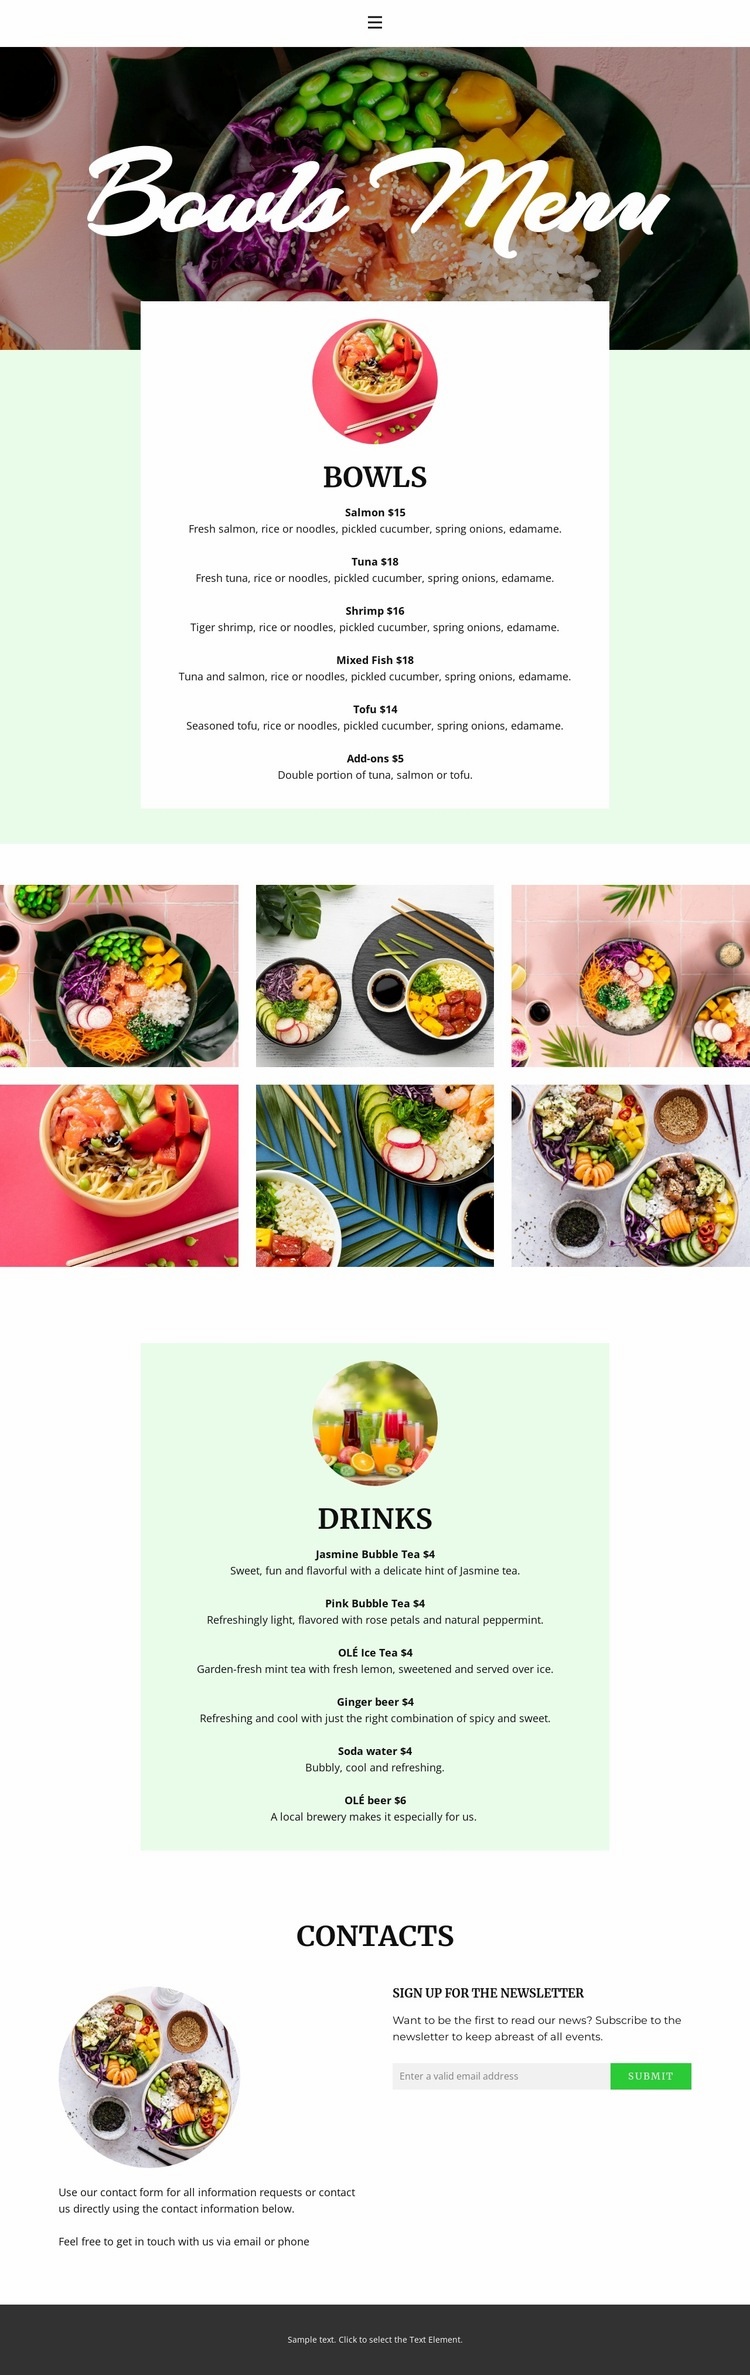 Bowl menu Web Page Design